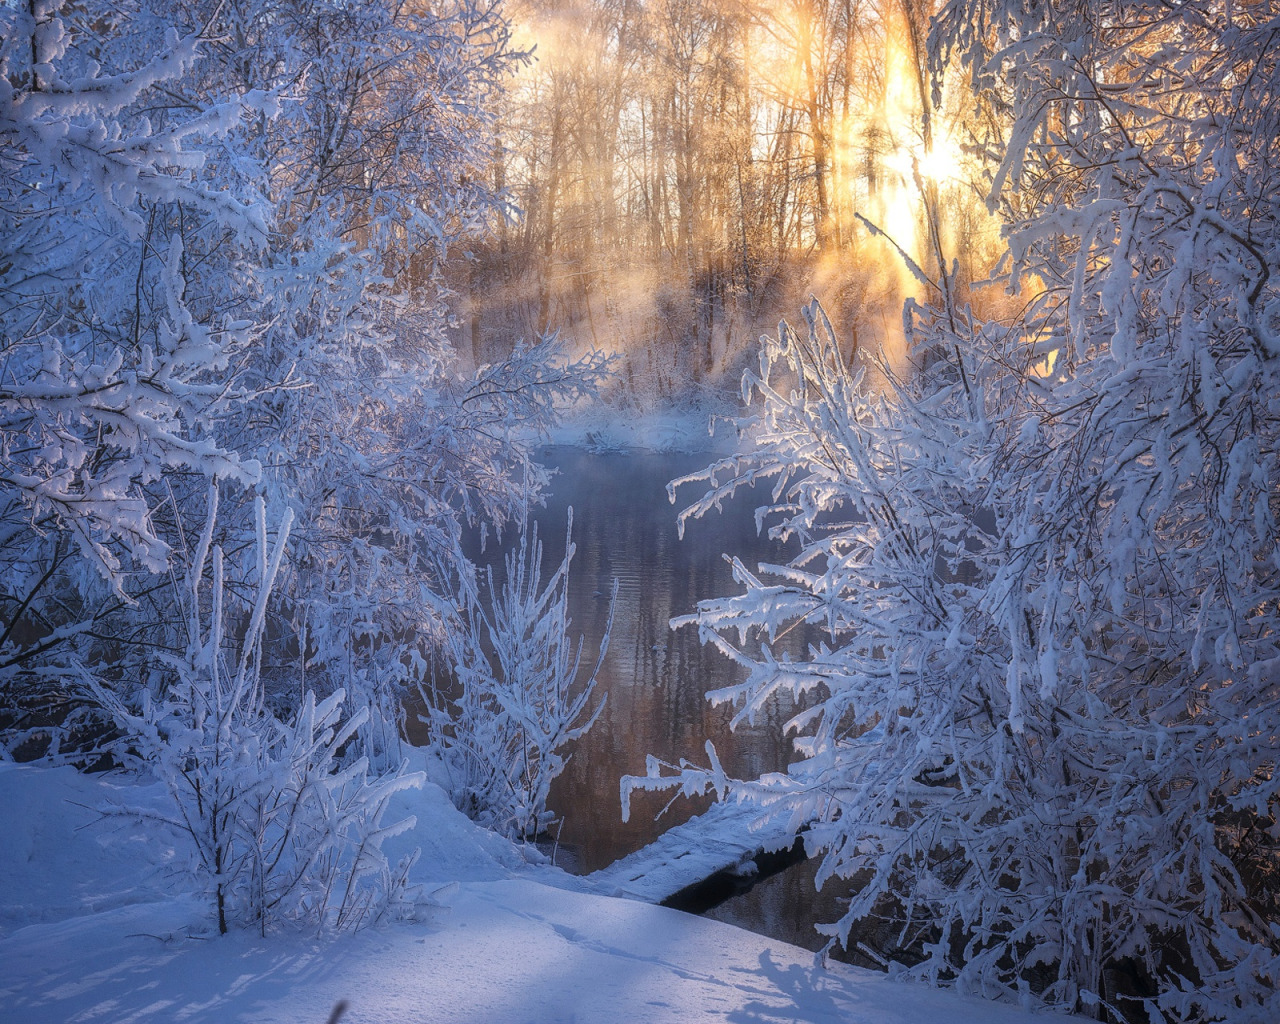 Фф и в морозном лесу я навеки. Зимняя сказка. Красивый зимний лес. Утро в зимнем лесу. Сказочный зимний лес.